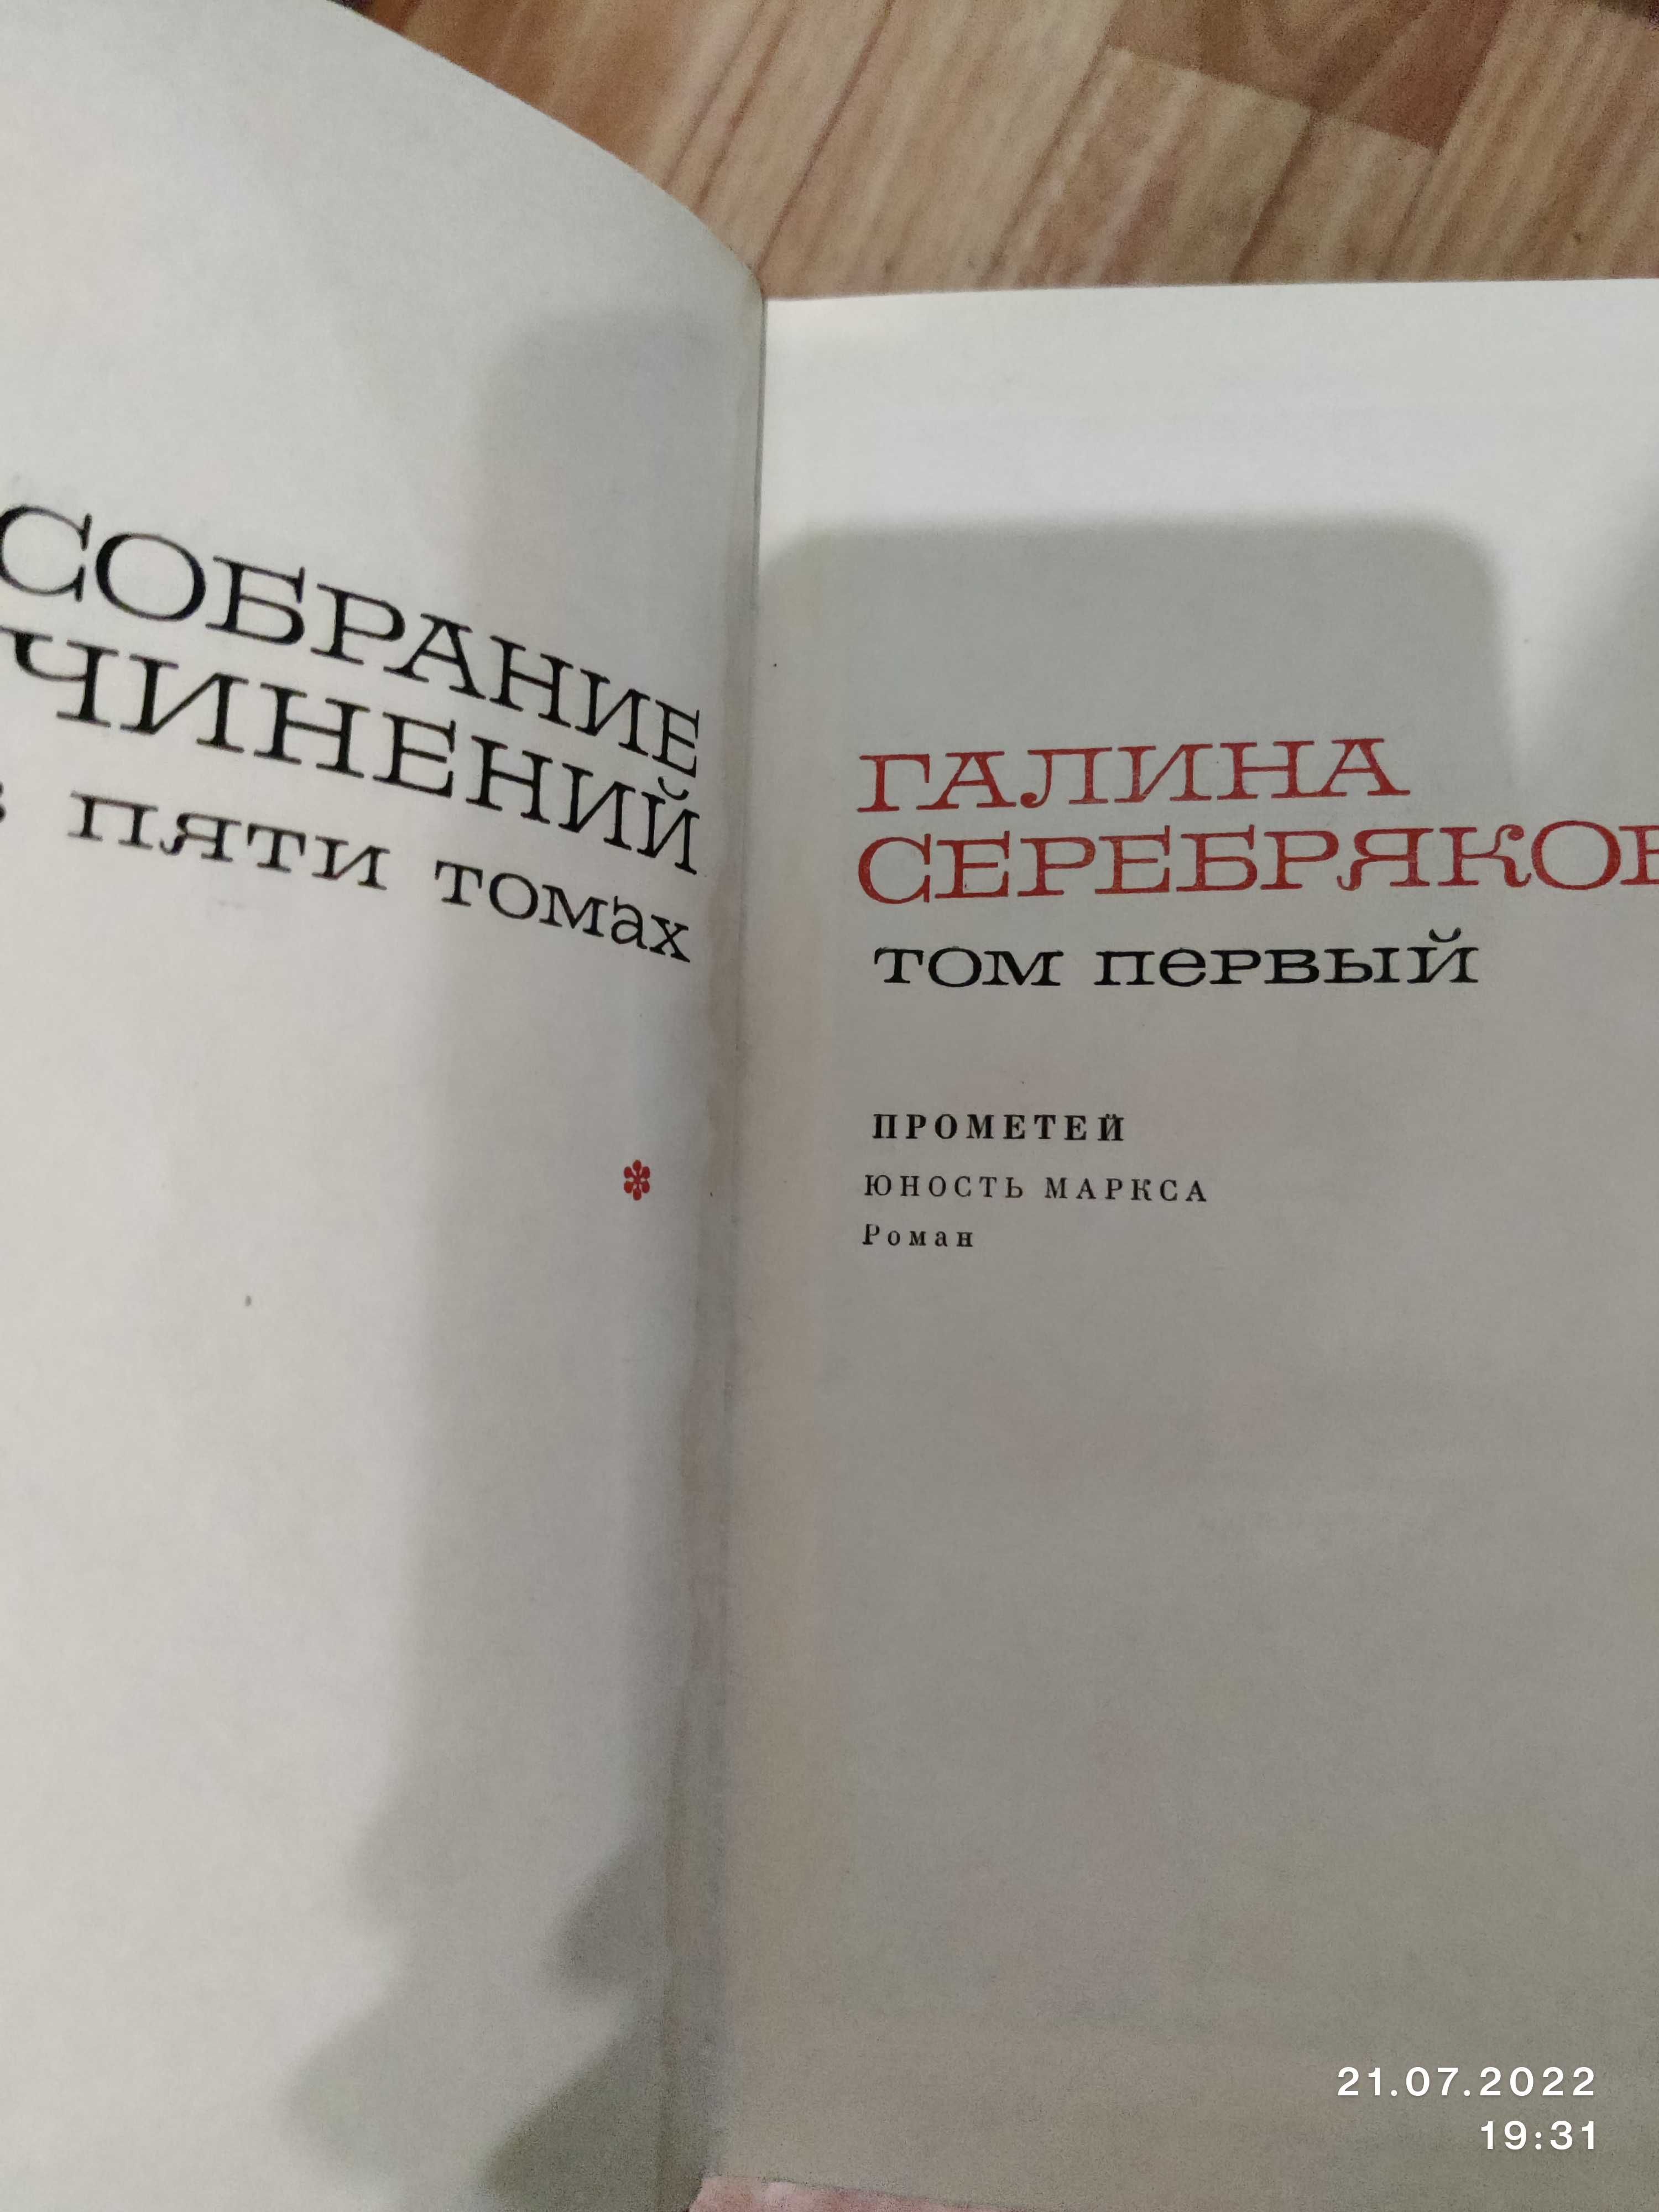 Галина Серебрякова, собрание сочинений в 5 томах, подписное издание